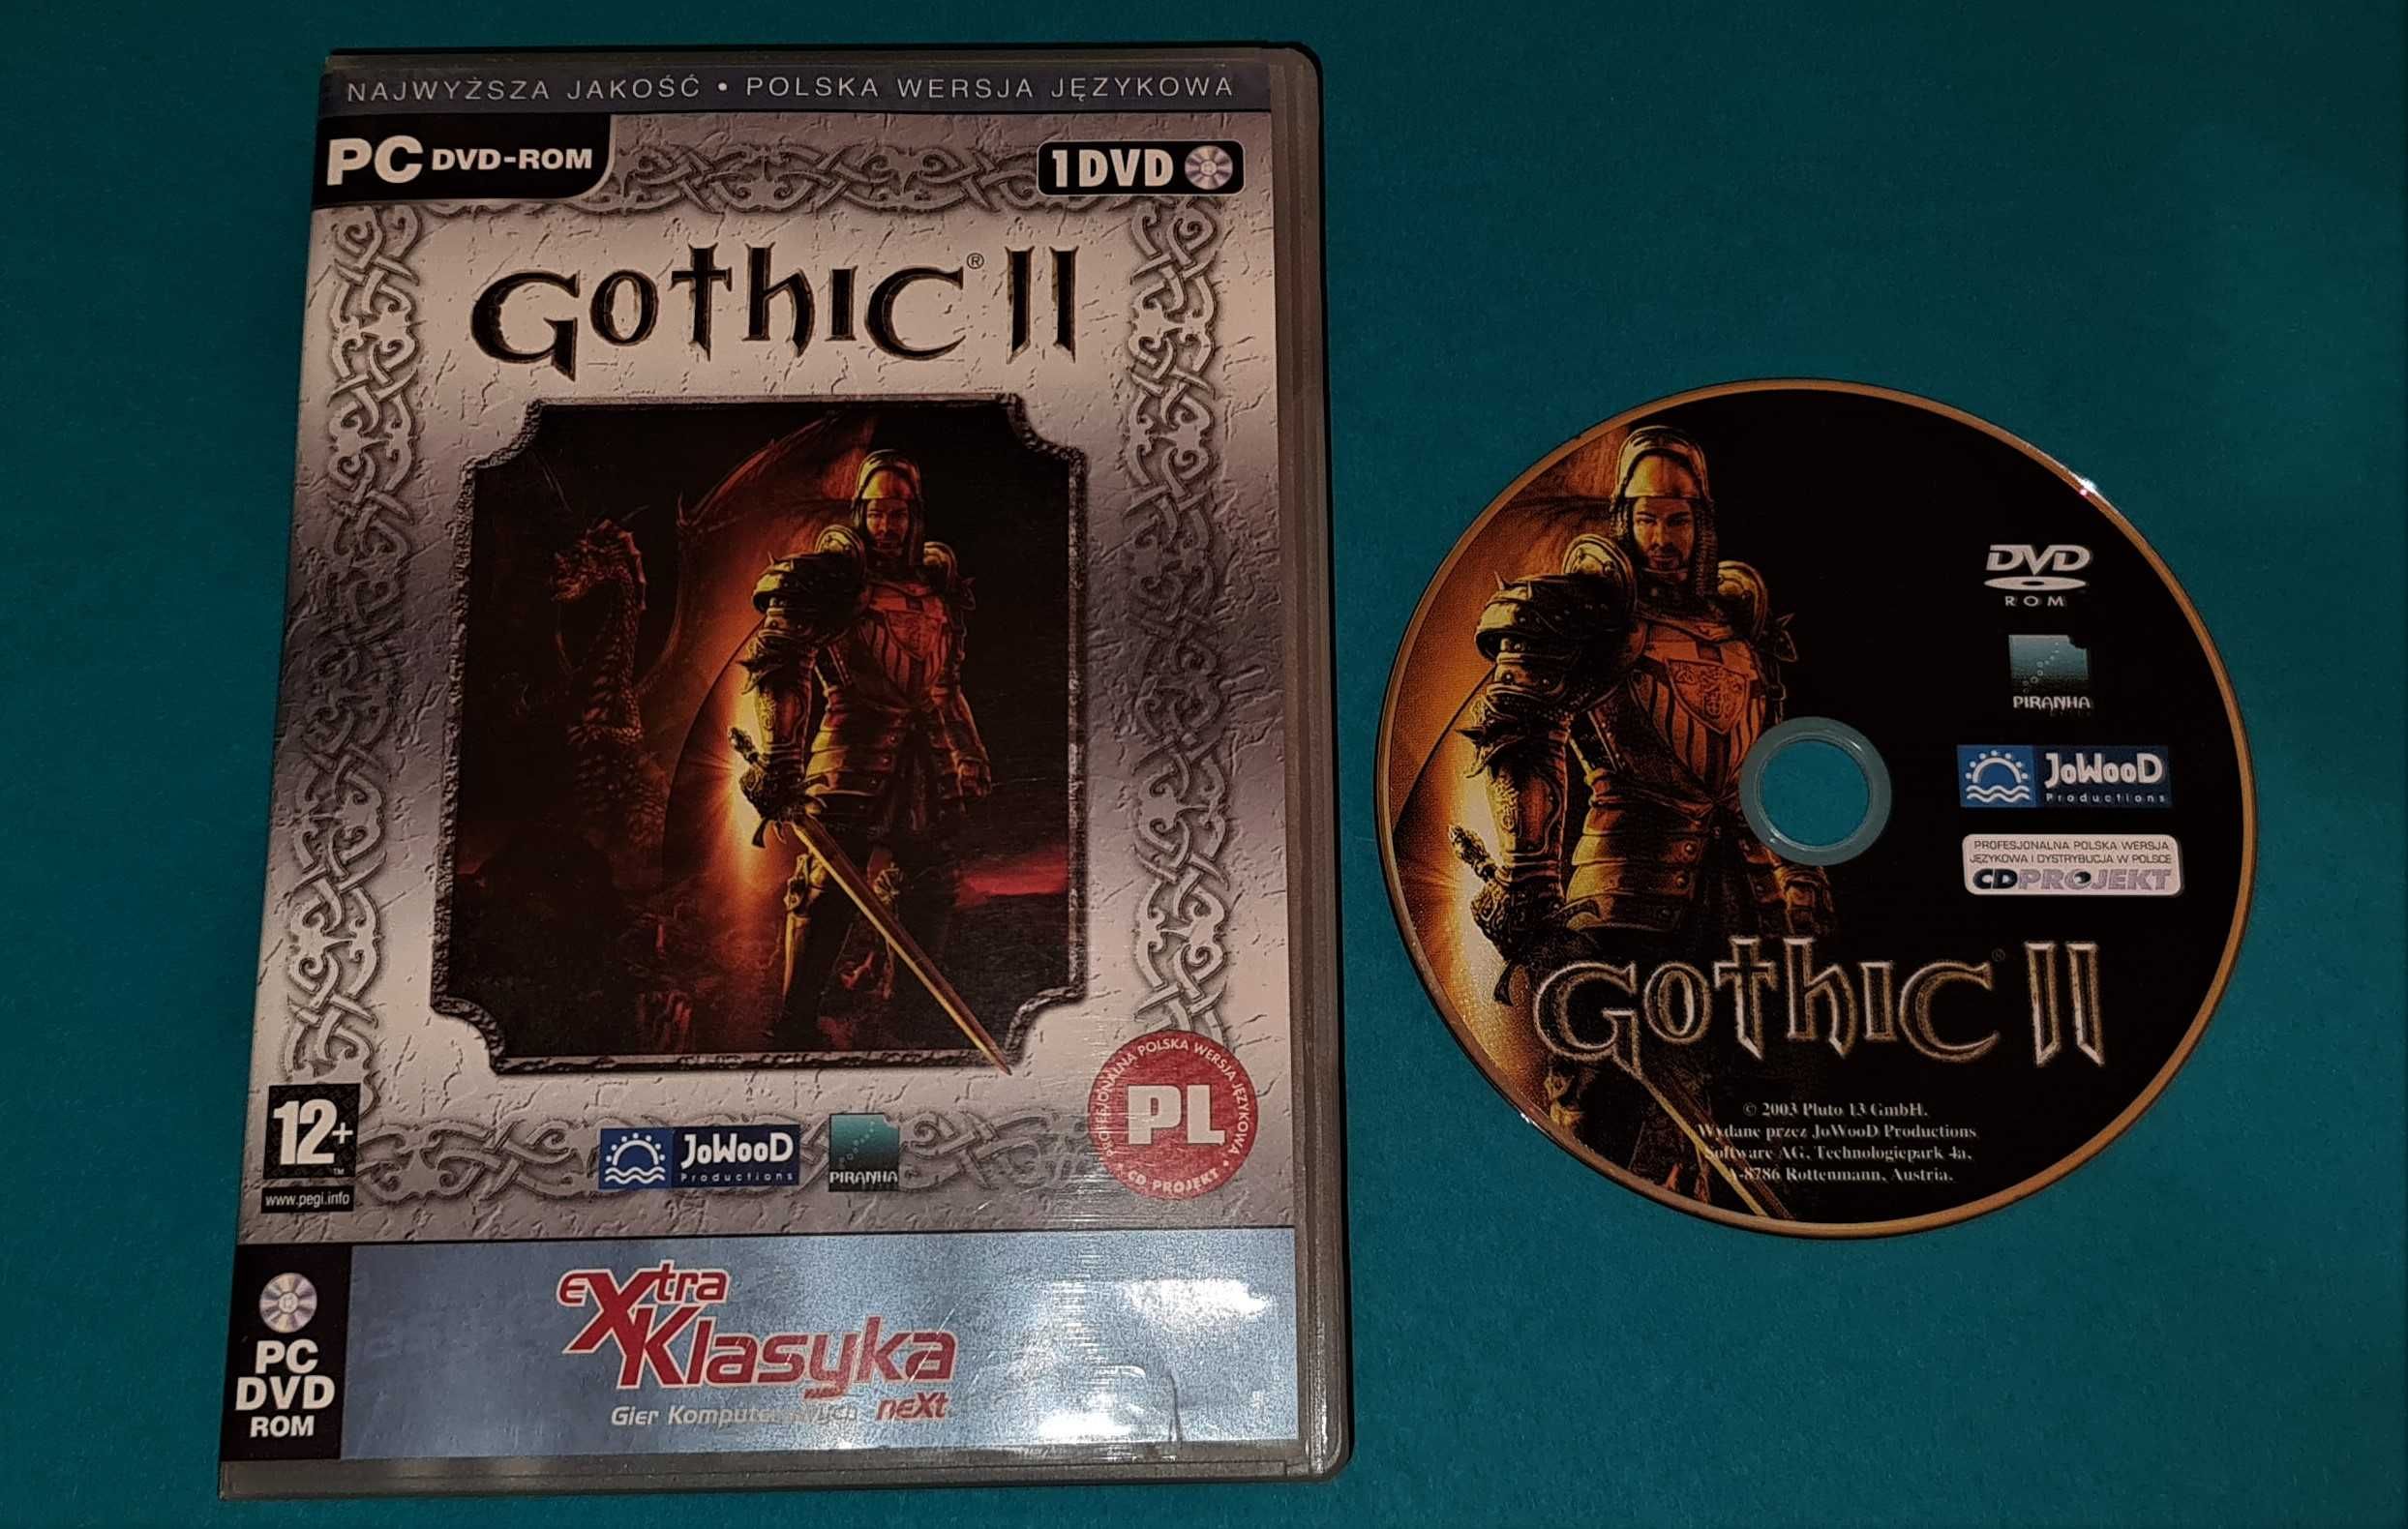 Ghotic II Gra na PC Retro 2003r